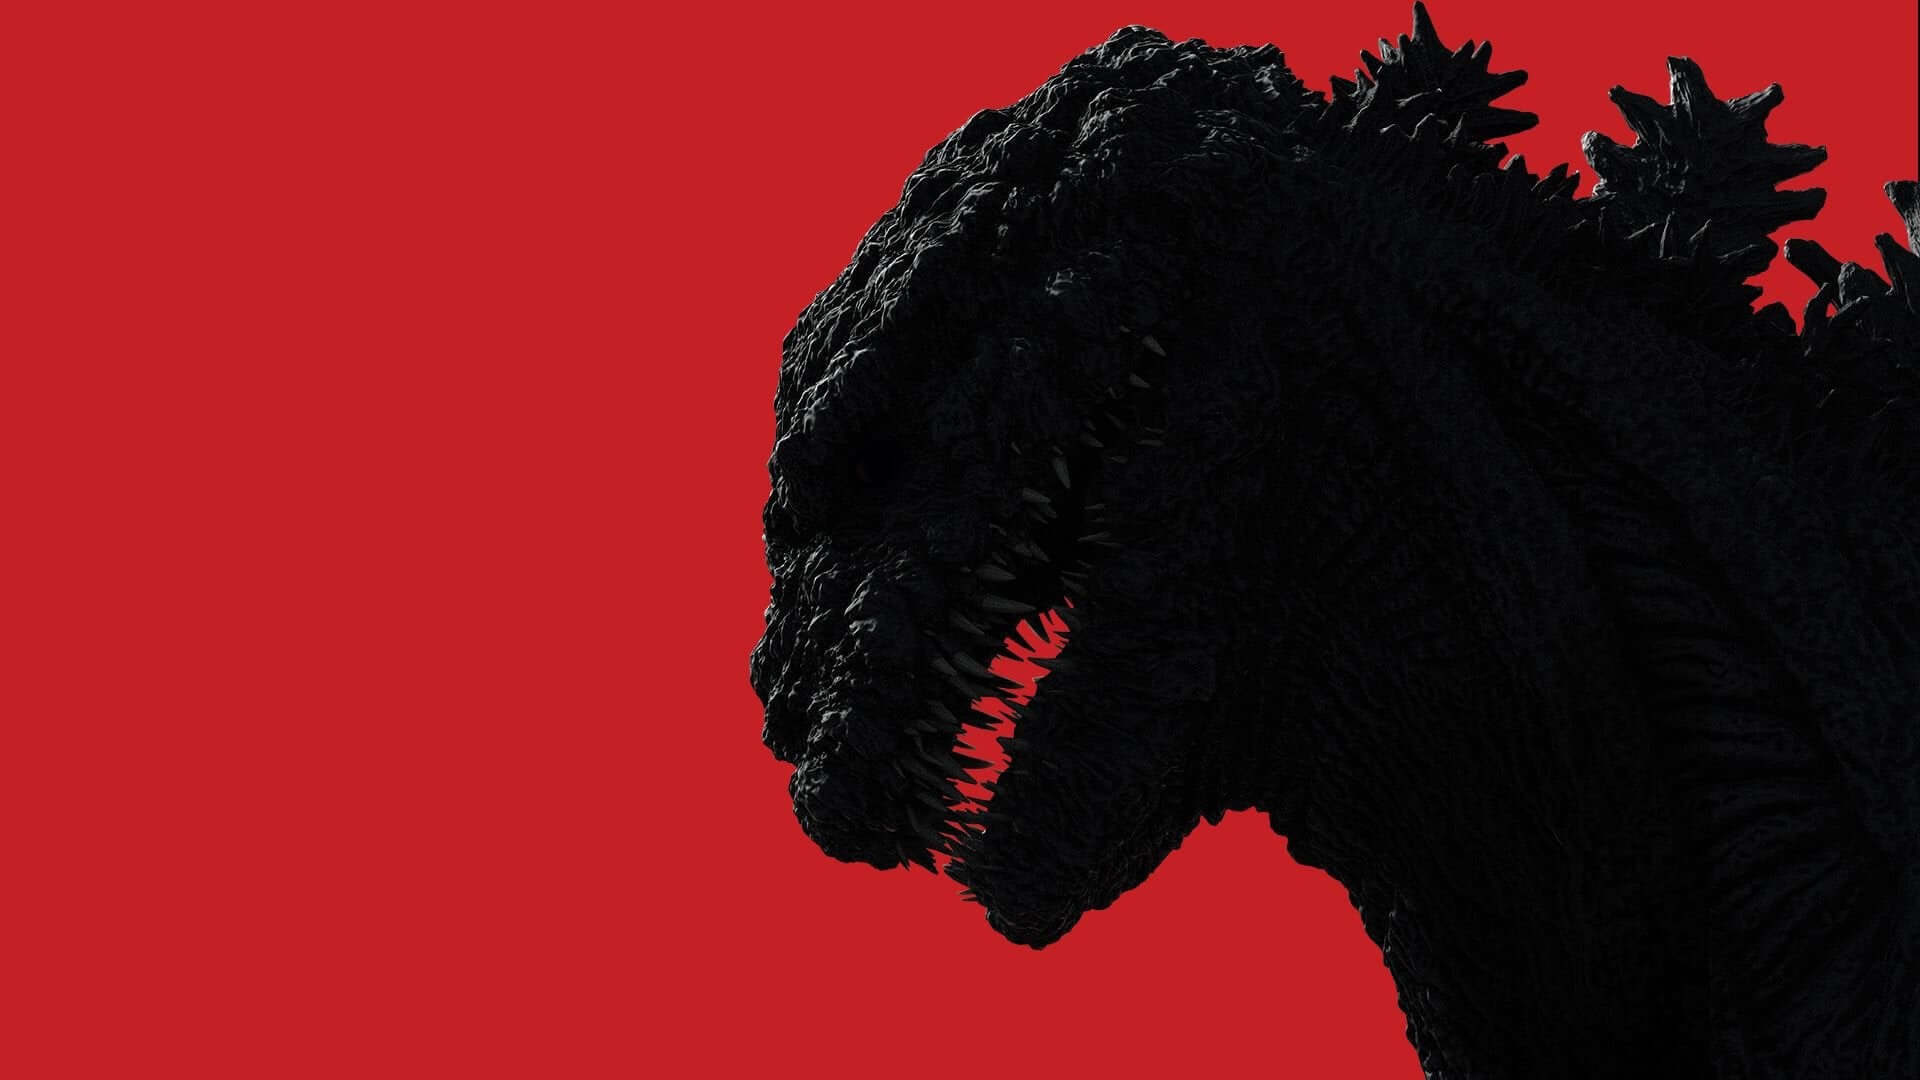 Shin-Godzilla: A fascinating Foreshadowing of Japan's Covid Crisis Response